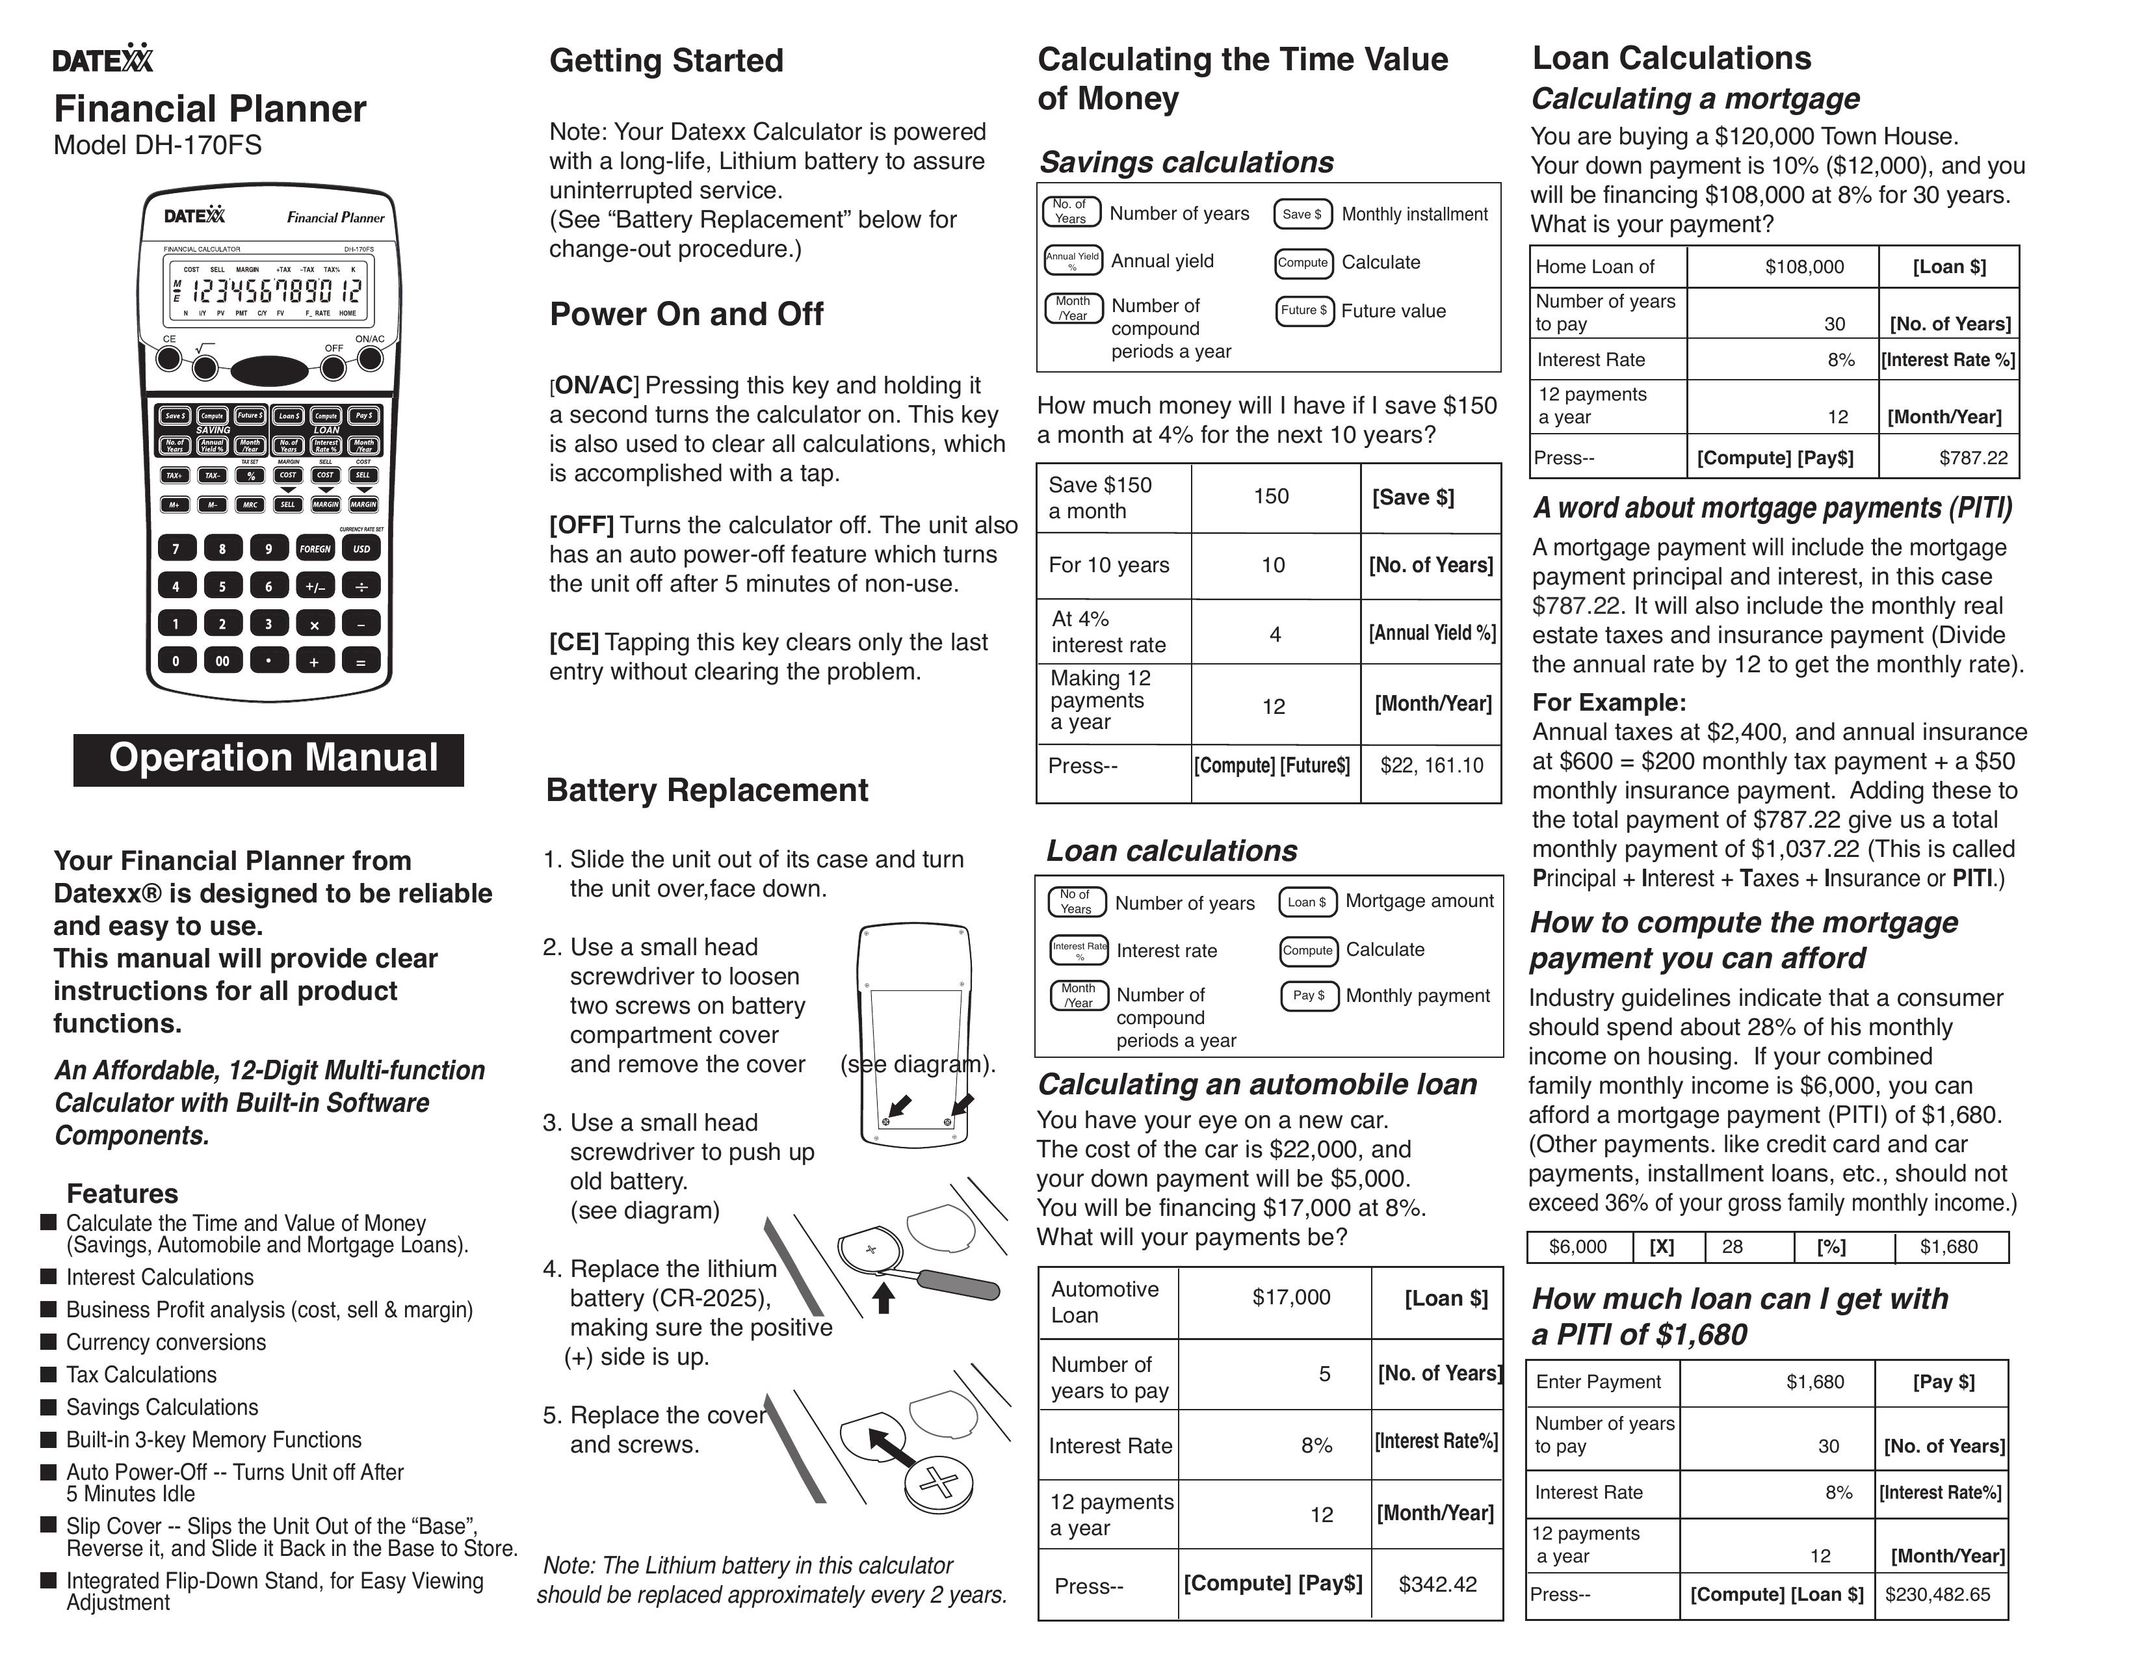 Datexx DH-170FS Calculator User Manual